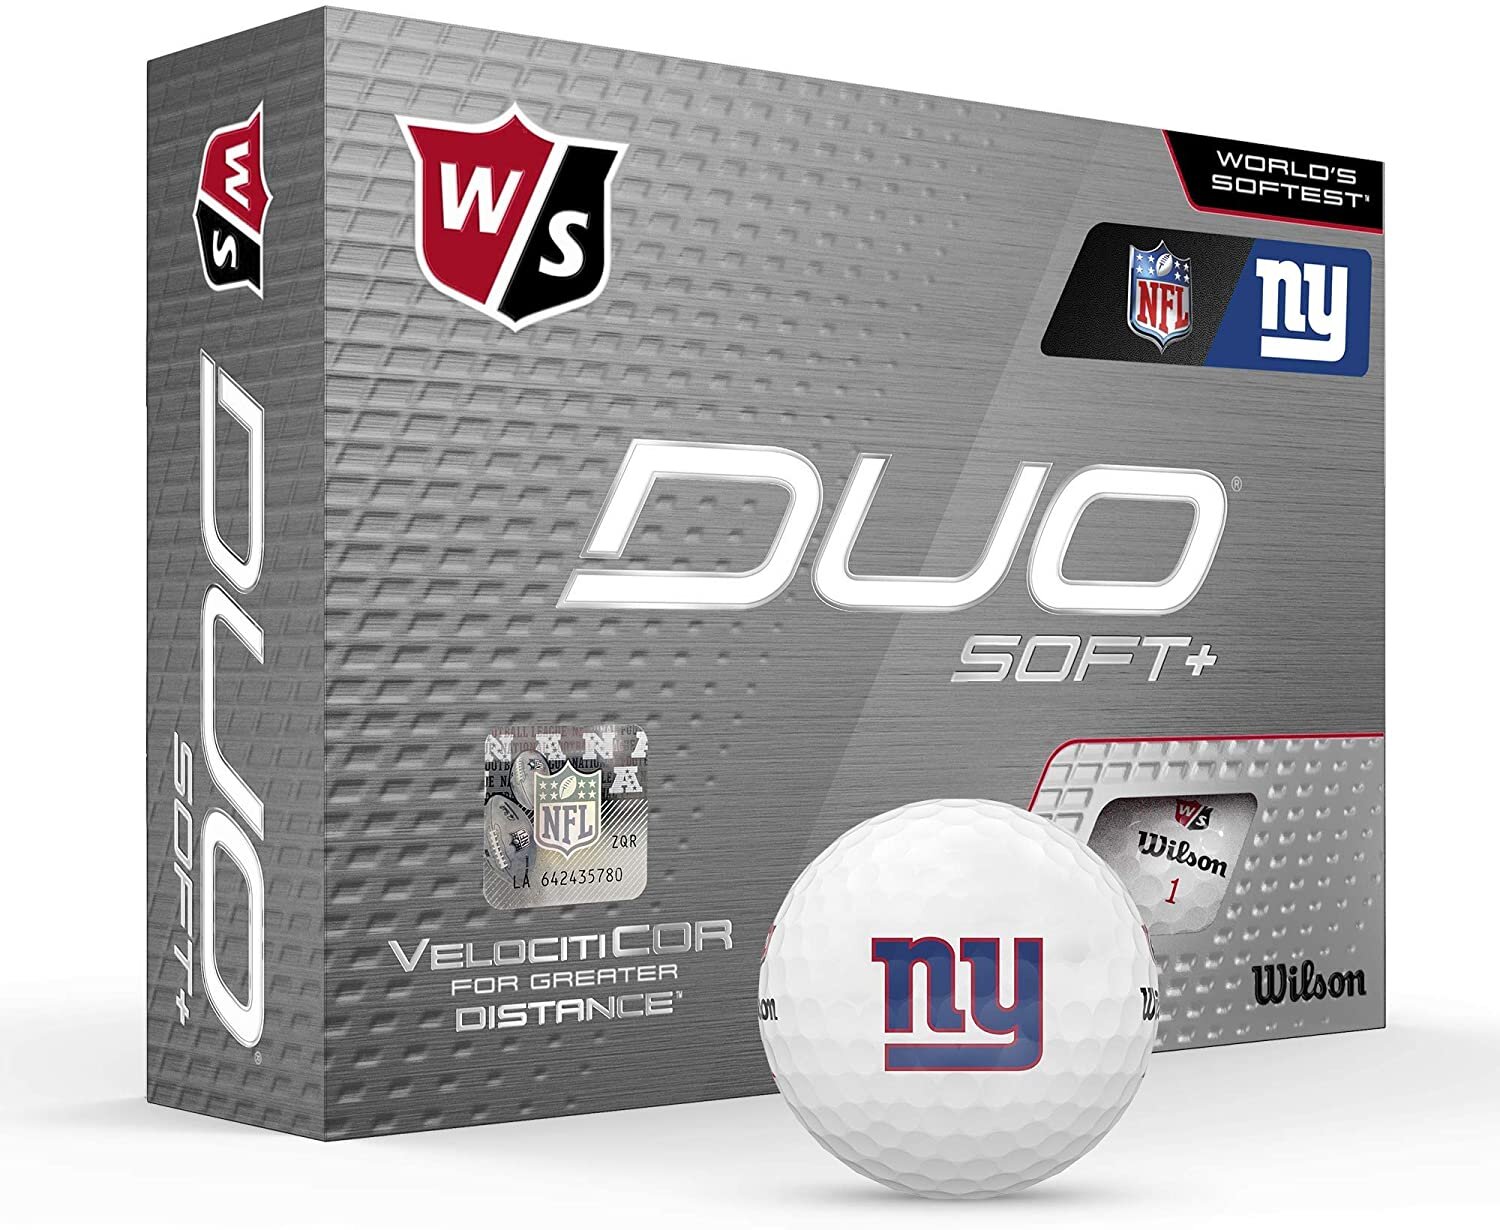 Wilson Staff Duo Soft/Soft+/NFL Golf Ball